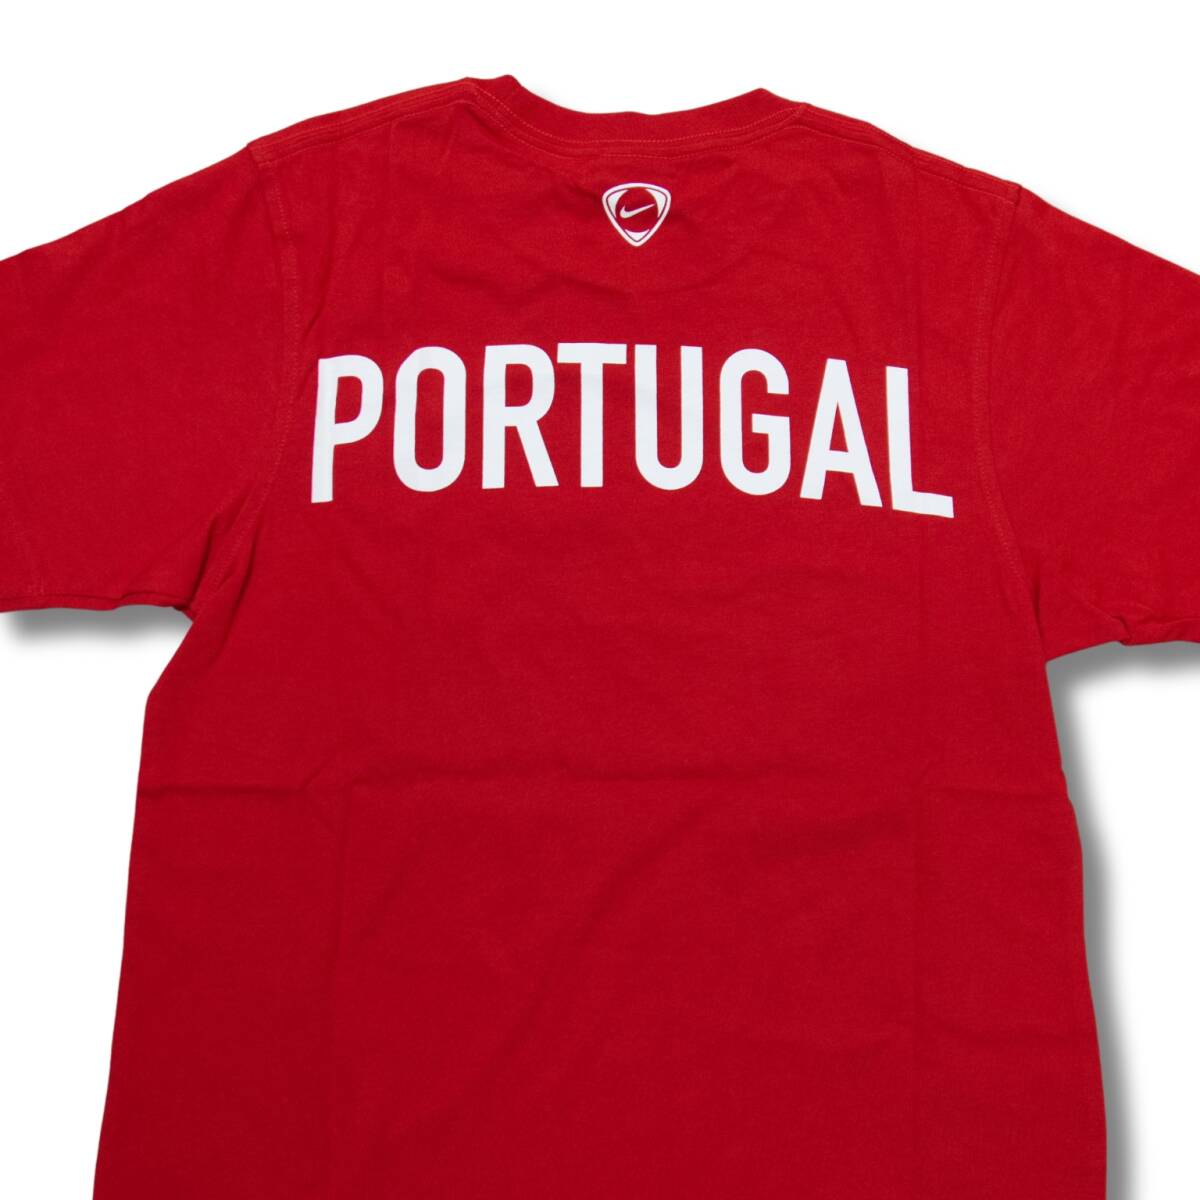 即決☆ナイキ ポルトガル代表Tシャツ US Lサイズ 日本サイズ XL 送料無料 半袖 ナイキジャパン国内正規品 NIKE_画像6